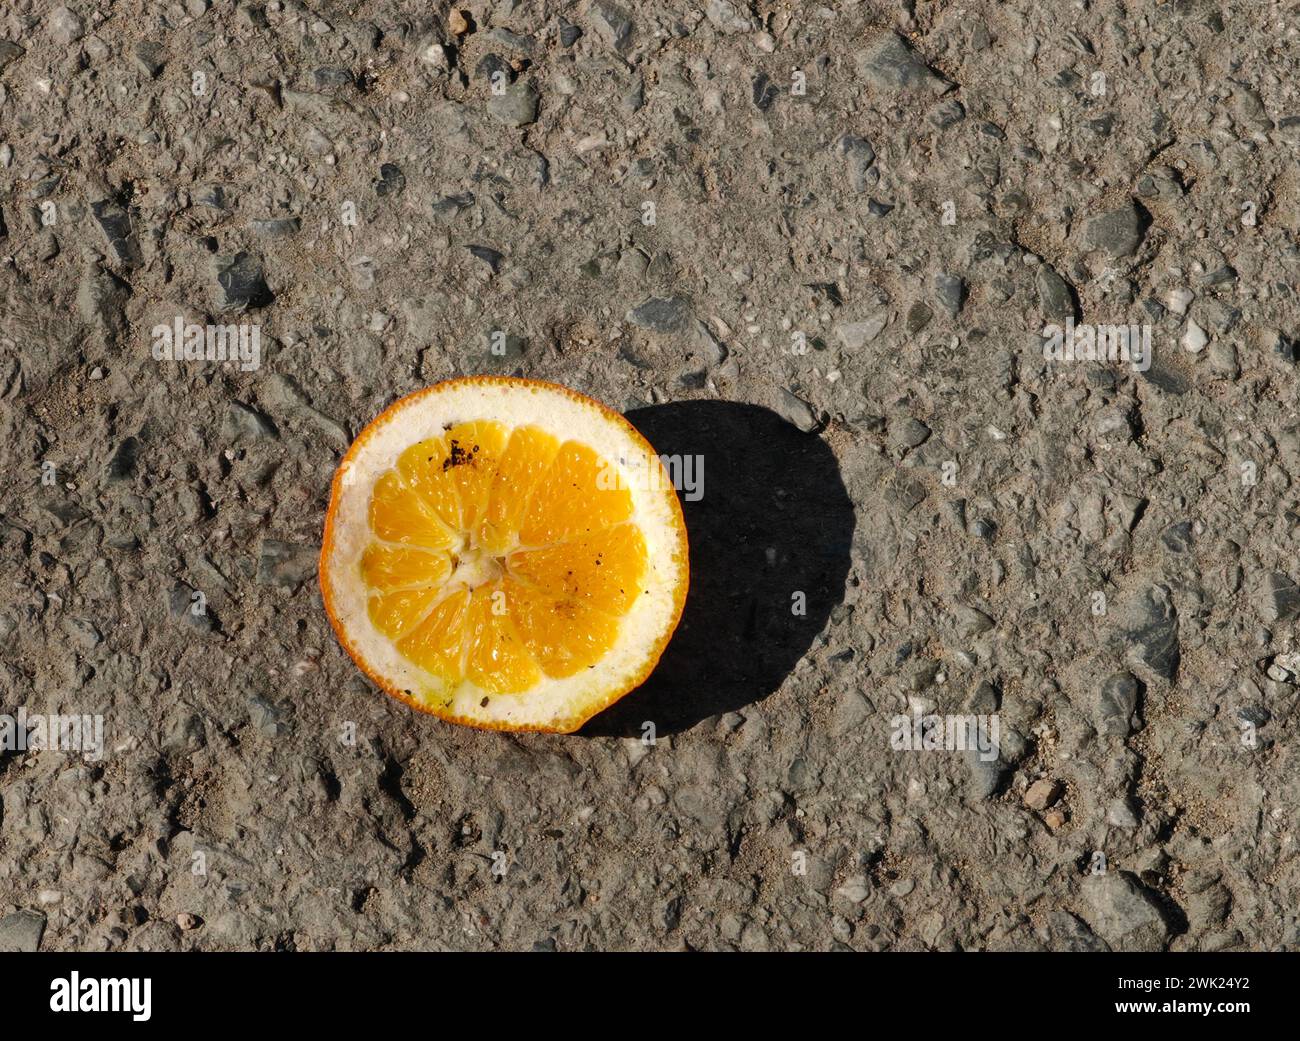 Tranquillité acidulée. Un demi-fruit orange au milieu de la solitude urbaine. Banque D'Images